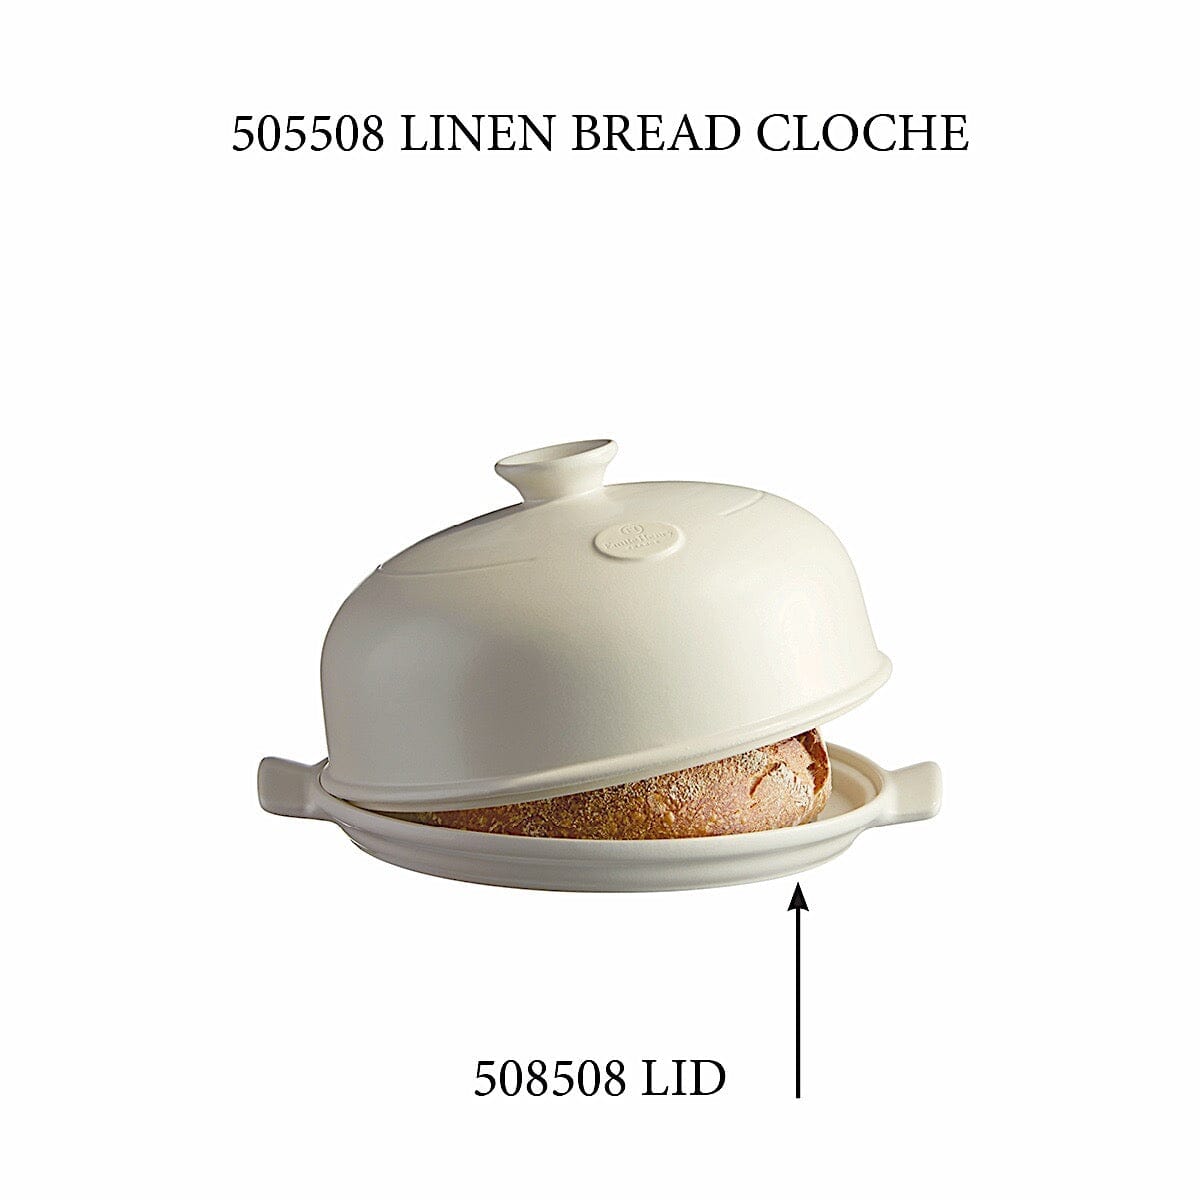 Emile Henry Bread Cloche in Linen